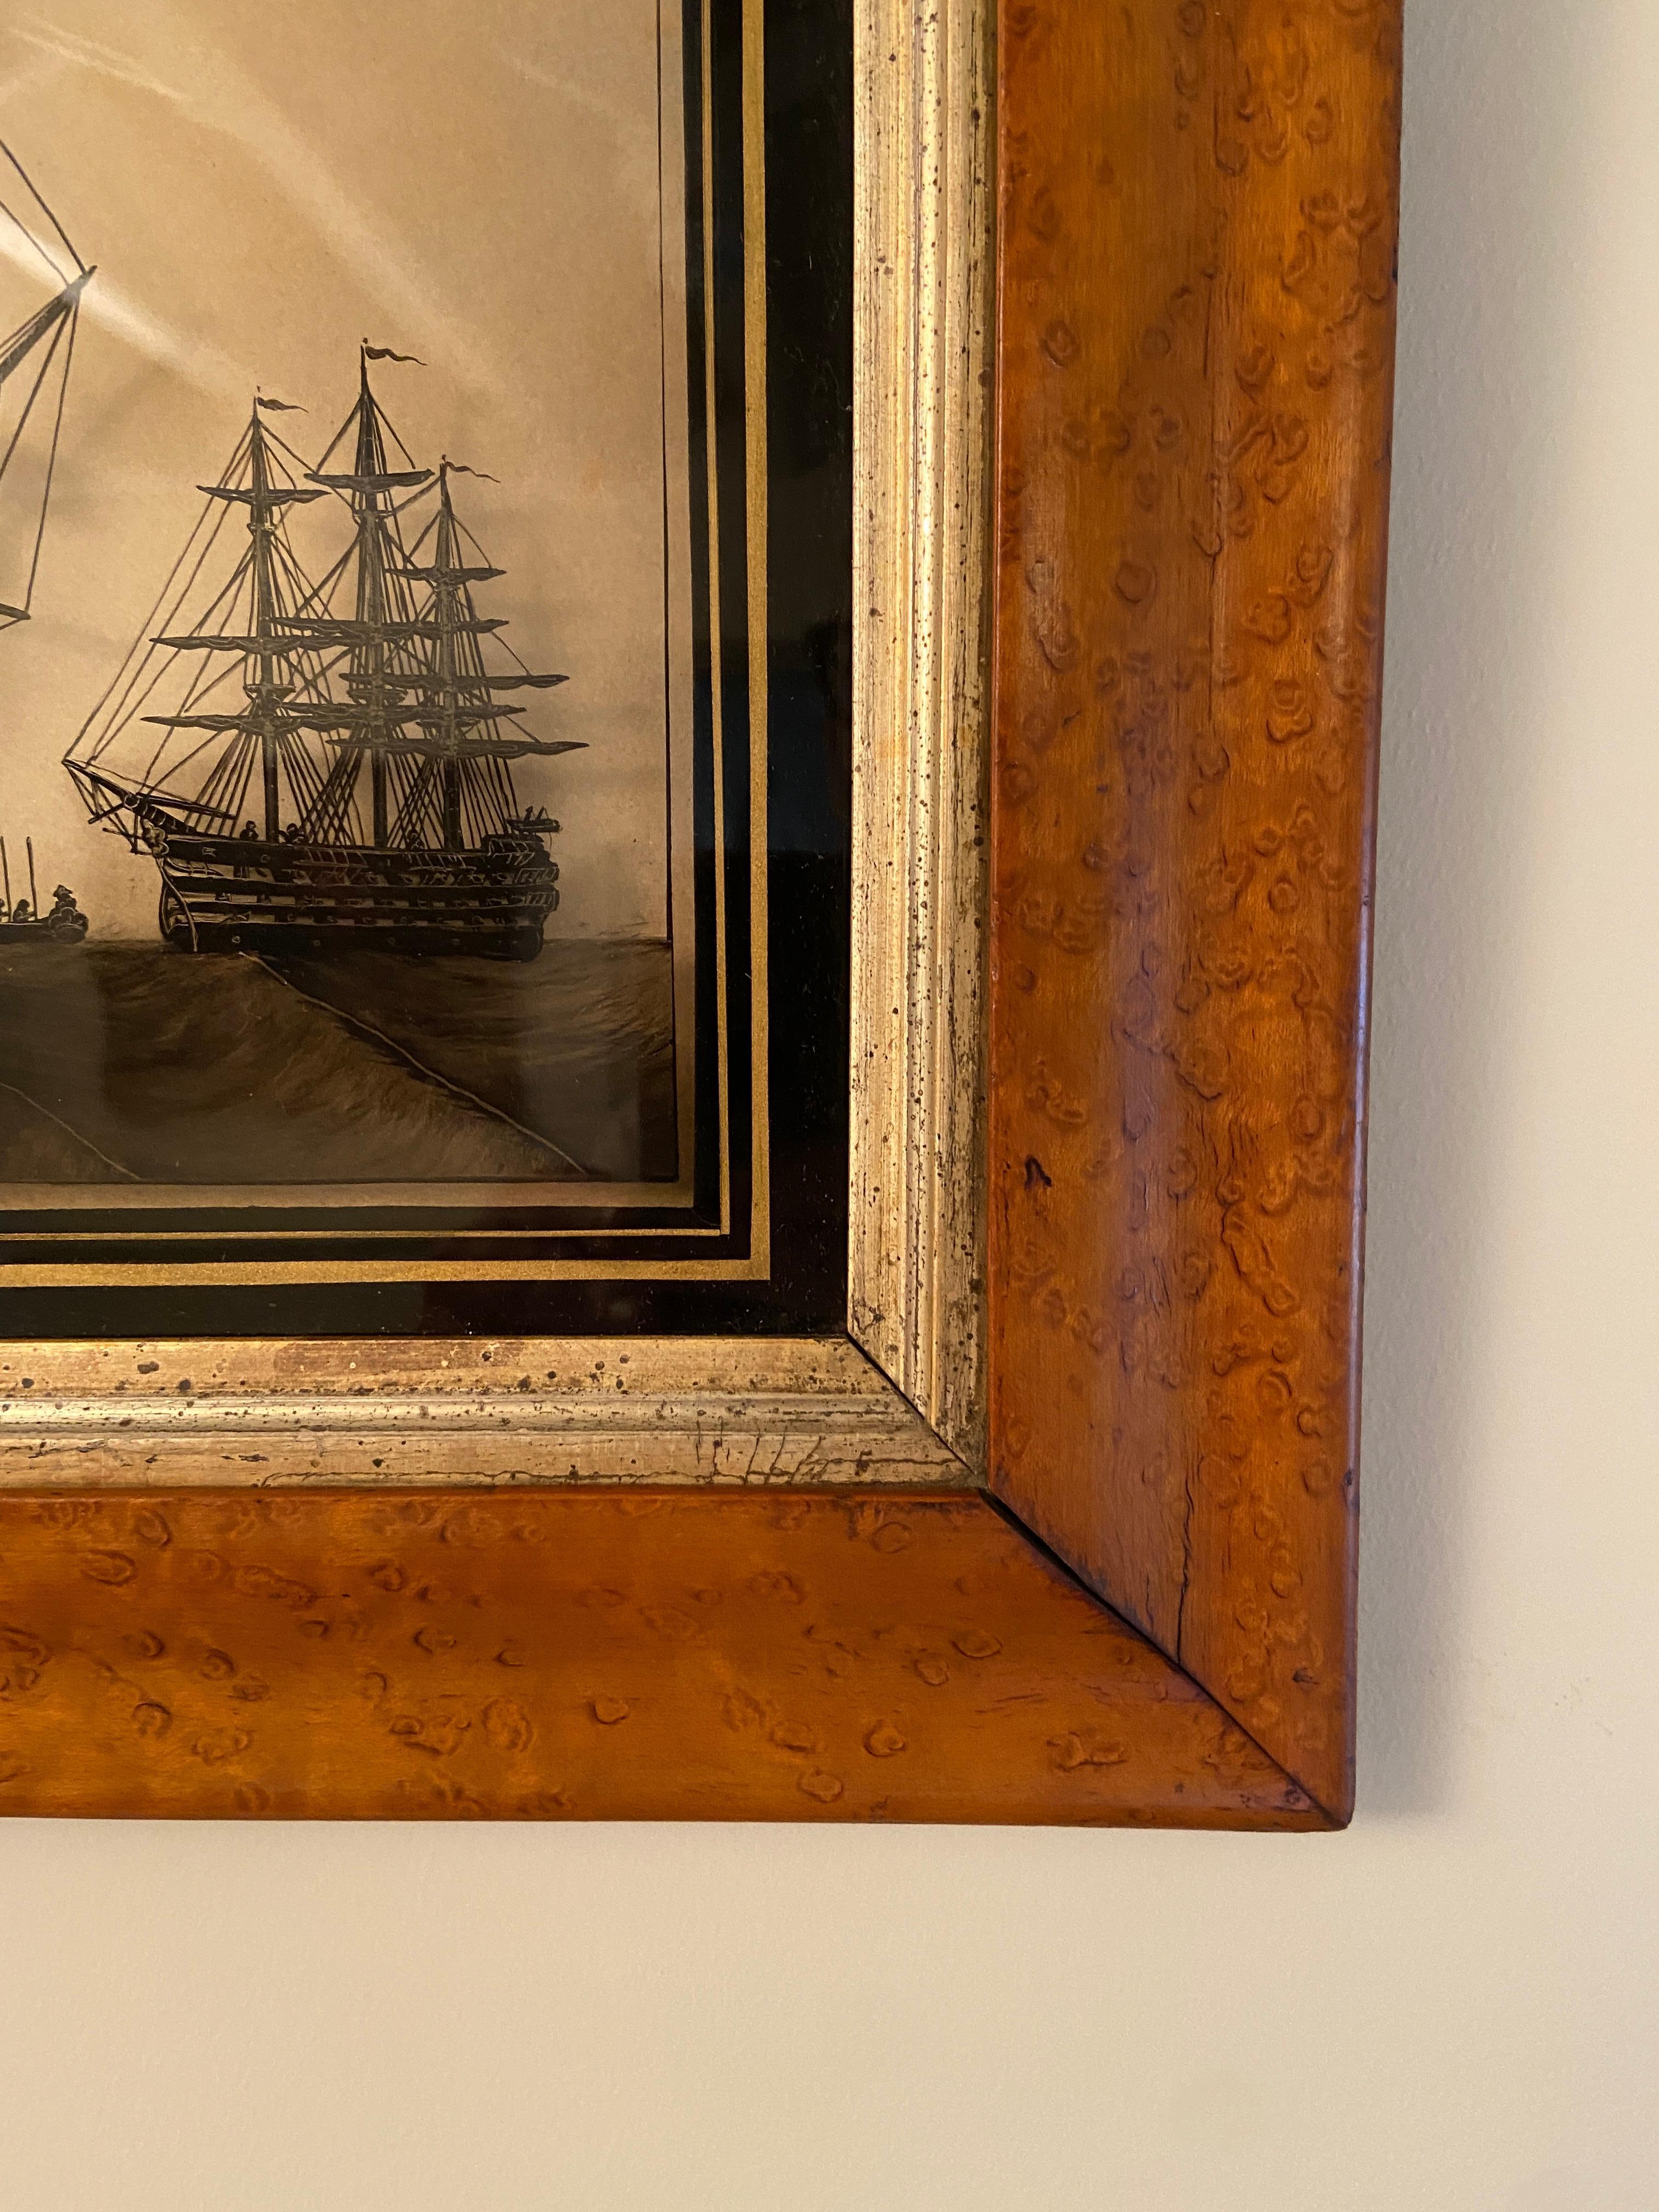 Tableau de silhouette en érable du début du 19e siècle, encadré avec verre inversé, représentant le Victory, le navire amiral de Nelson. 

Les peintures de silhouettes sur verre inversé étaient populaires au XIXe siècle et les navires connus de